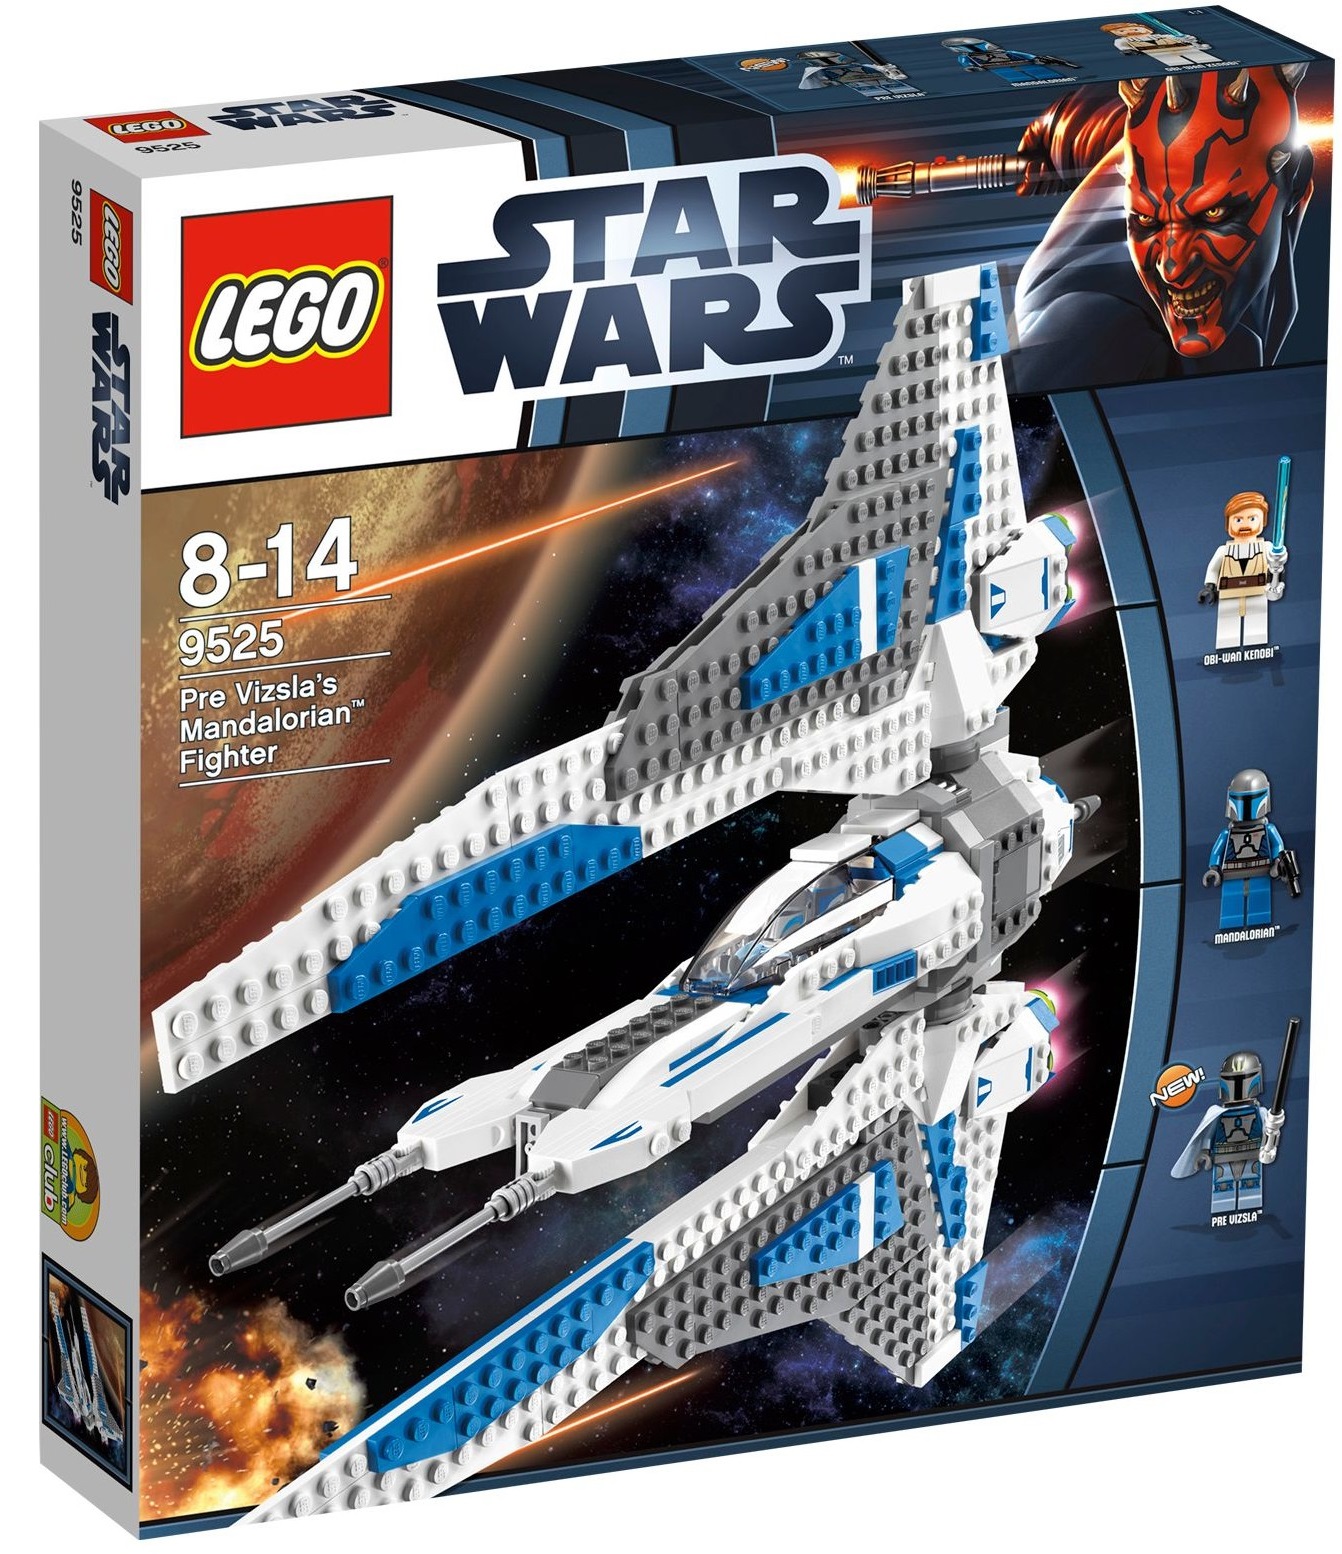 Лего Star Wars 9525 Мандалорианский истребитель Пре Визслы